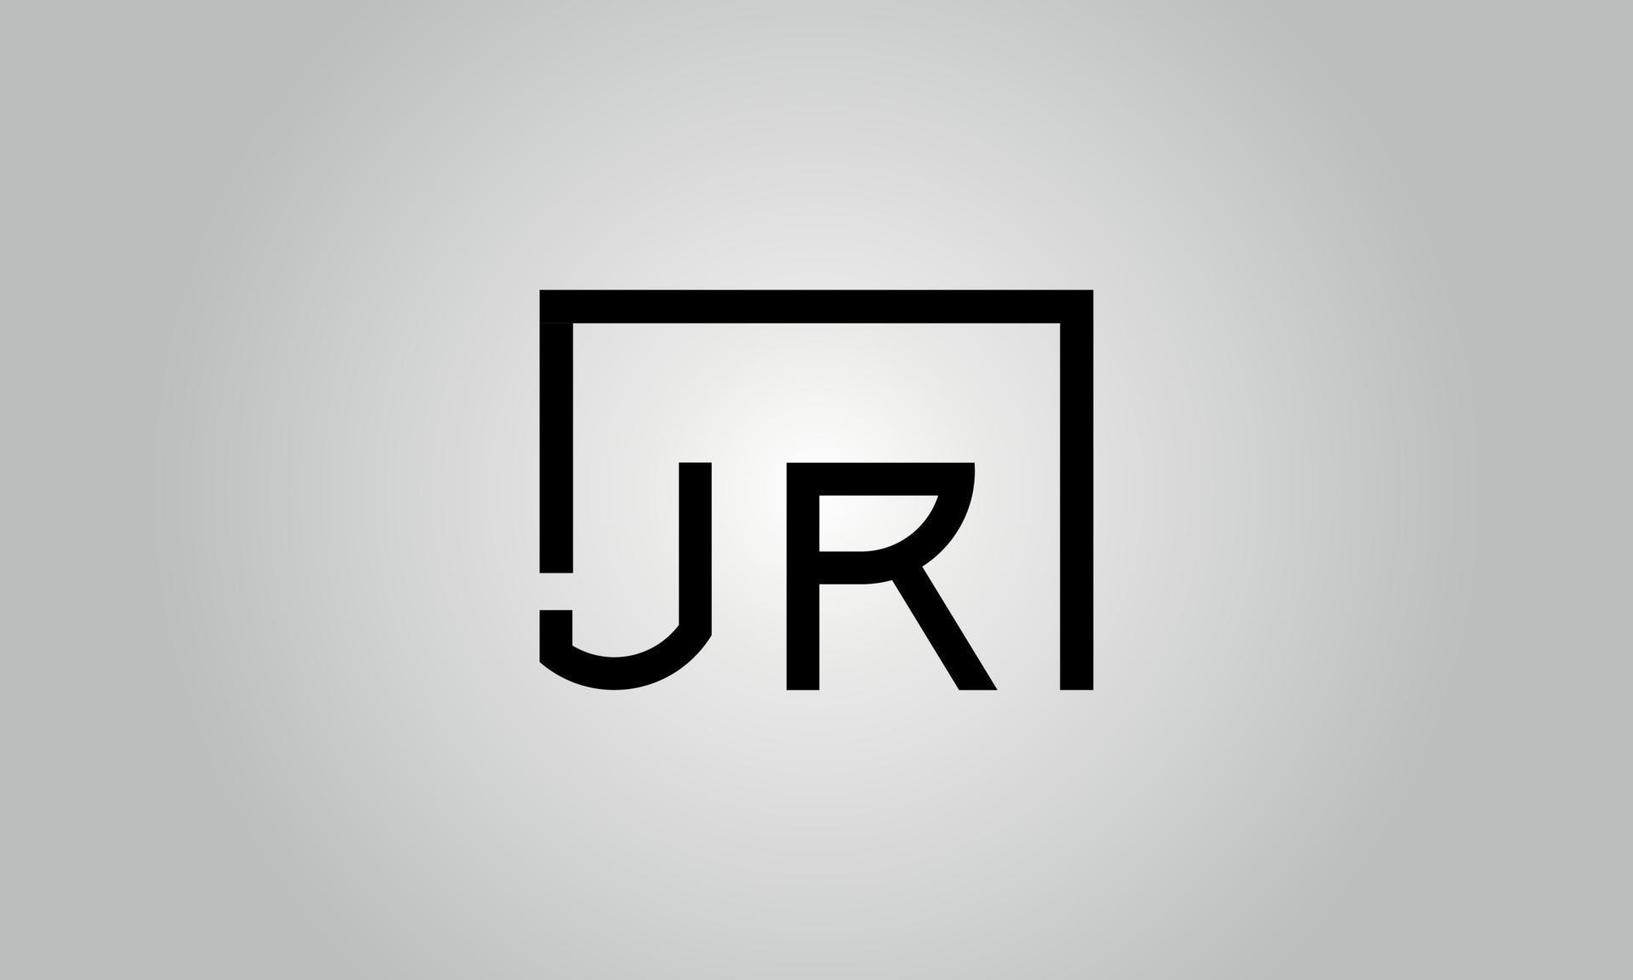 création de logo lettre jr. logo jr avec forme carrée dans le modèle de vecteur gratuit de vecteur de couleurs noires.